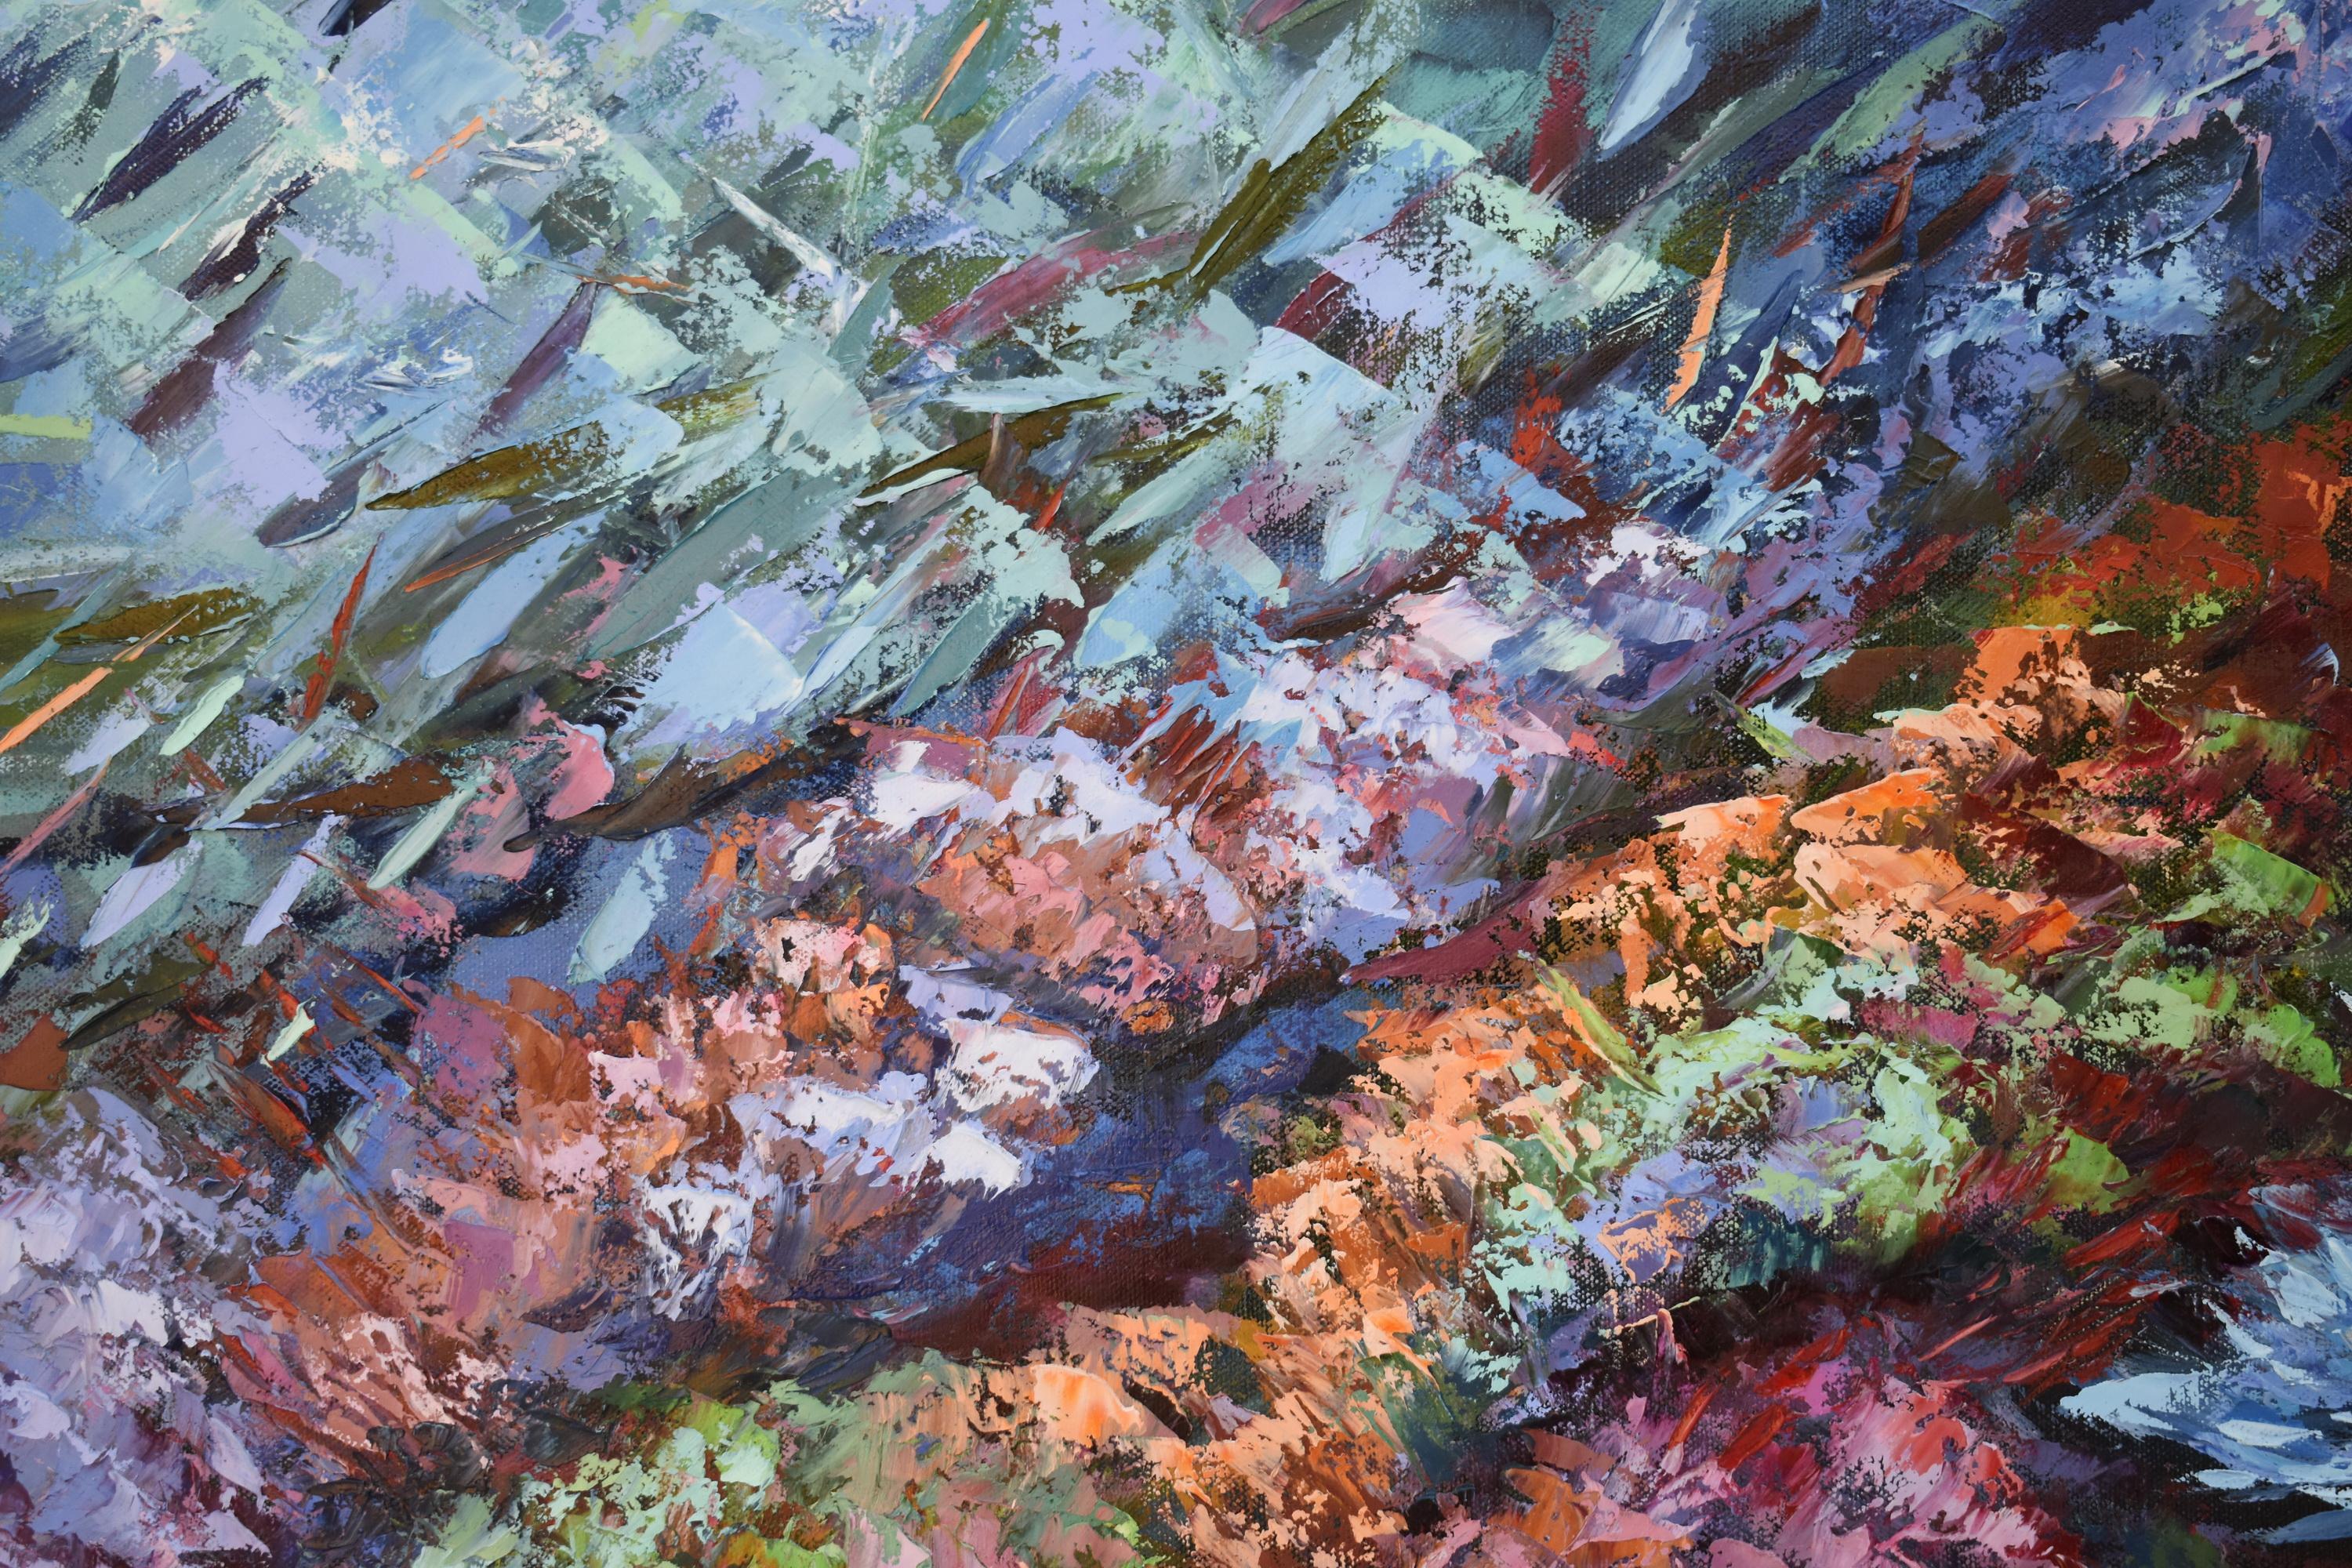 Coral Reef Painting Ocean Art Underwater Seascape Original Painting For Sale 2